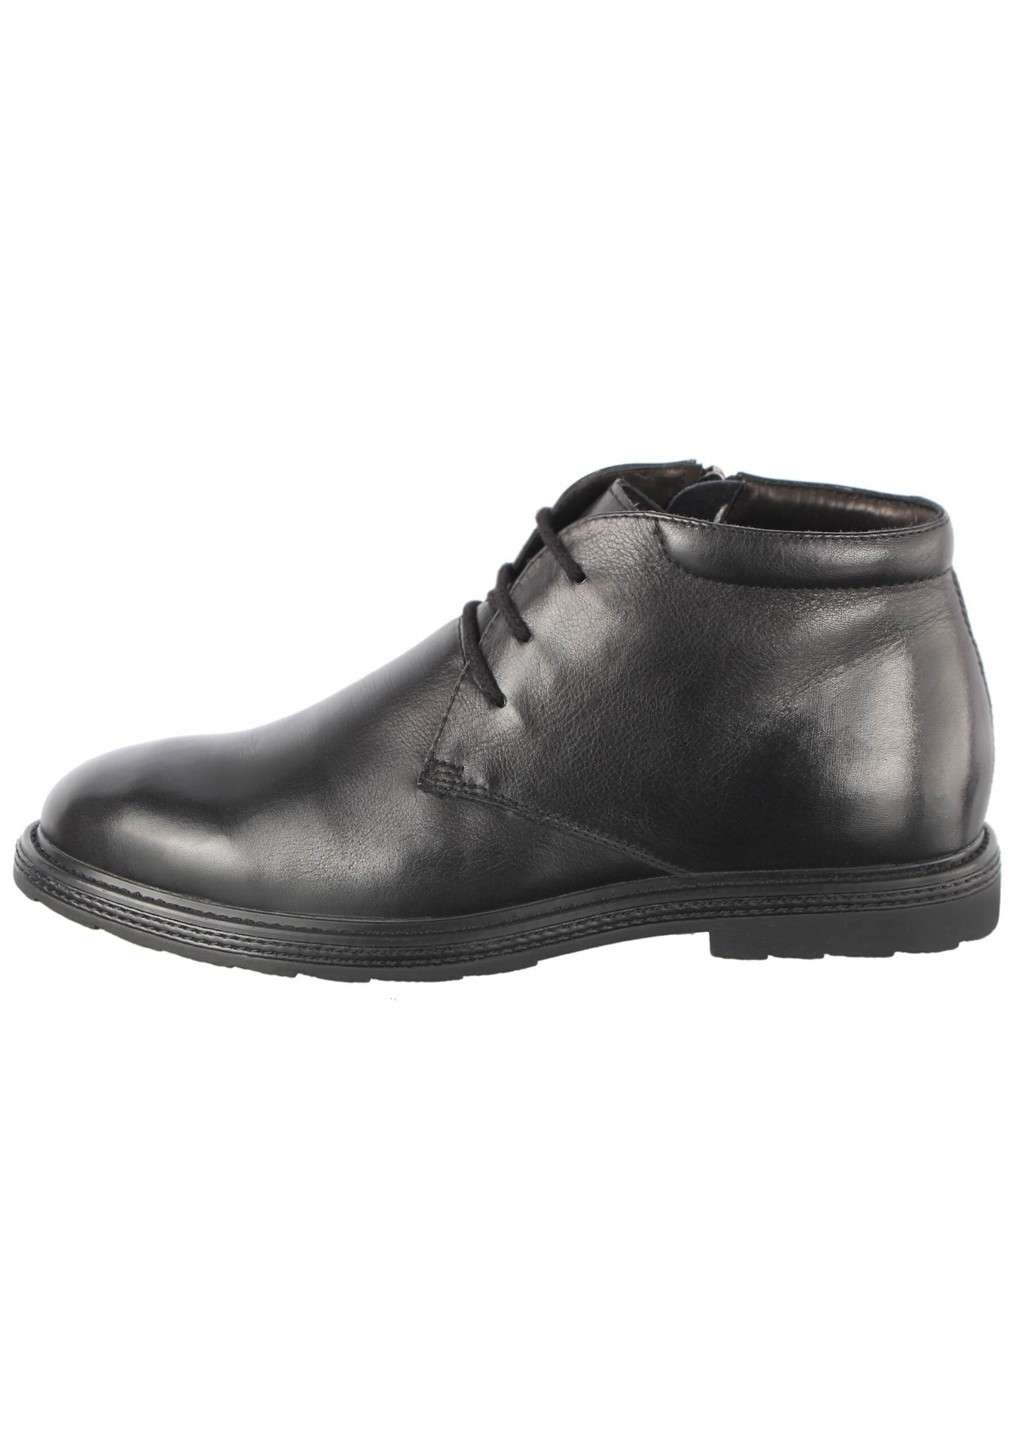 Черные зимние мужские зимние классические ботинки 207401 Lido Marinozzi